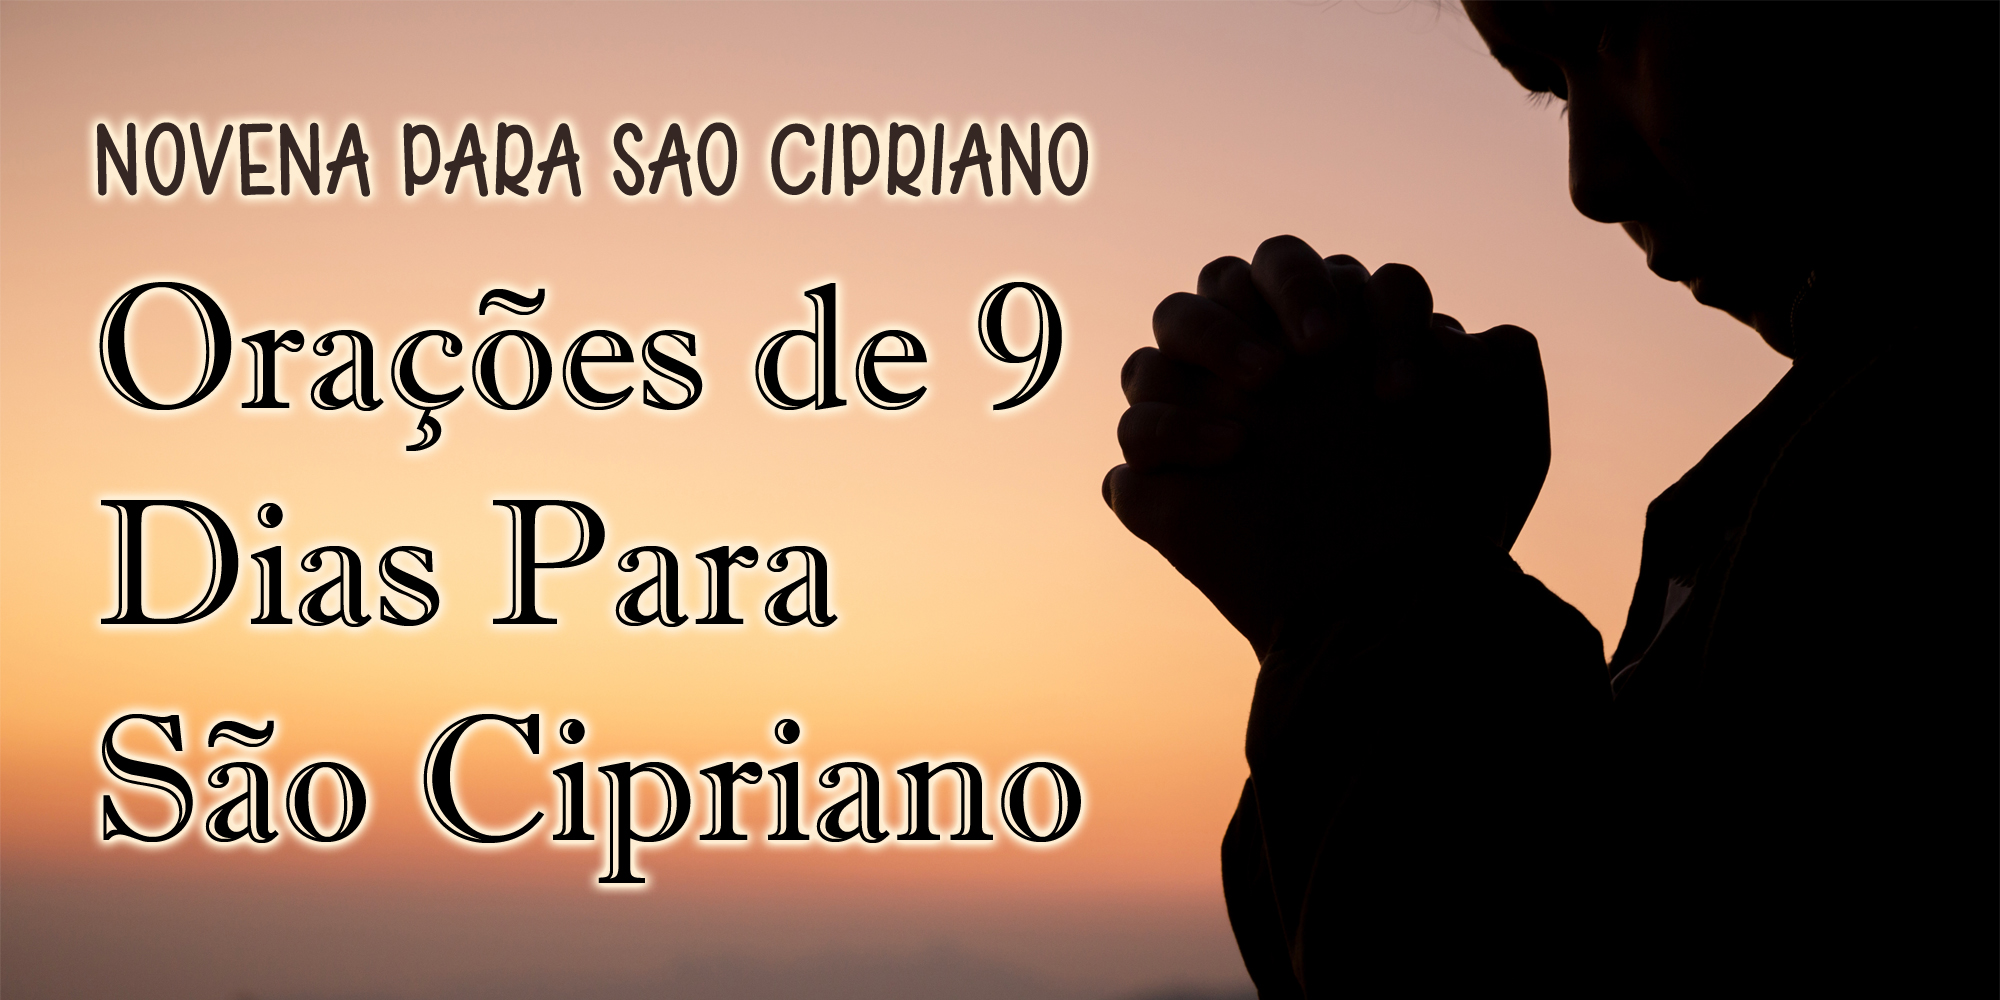 Novena Para São Cipriano – Orações de 9 Dias Para São Cipriano